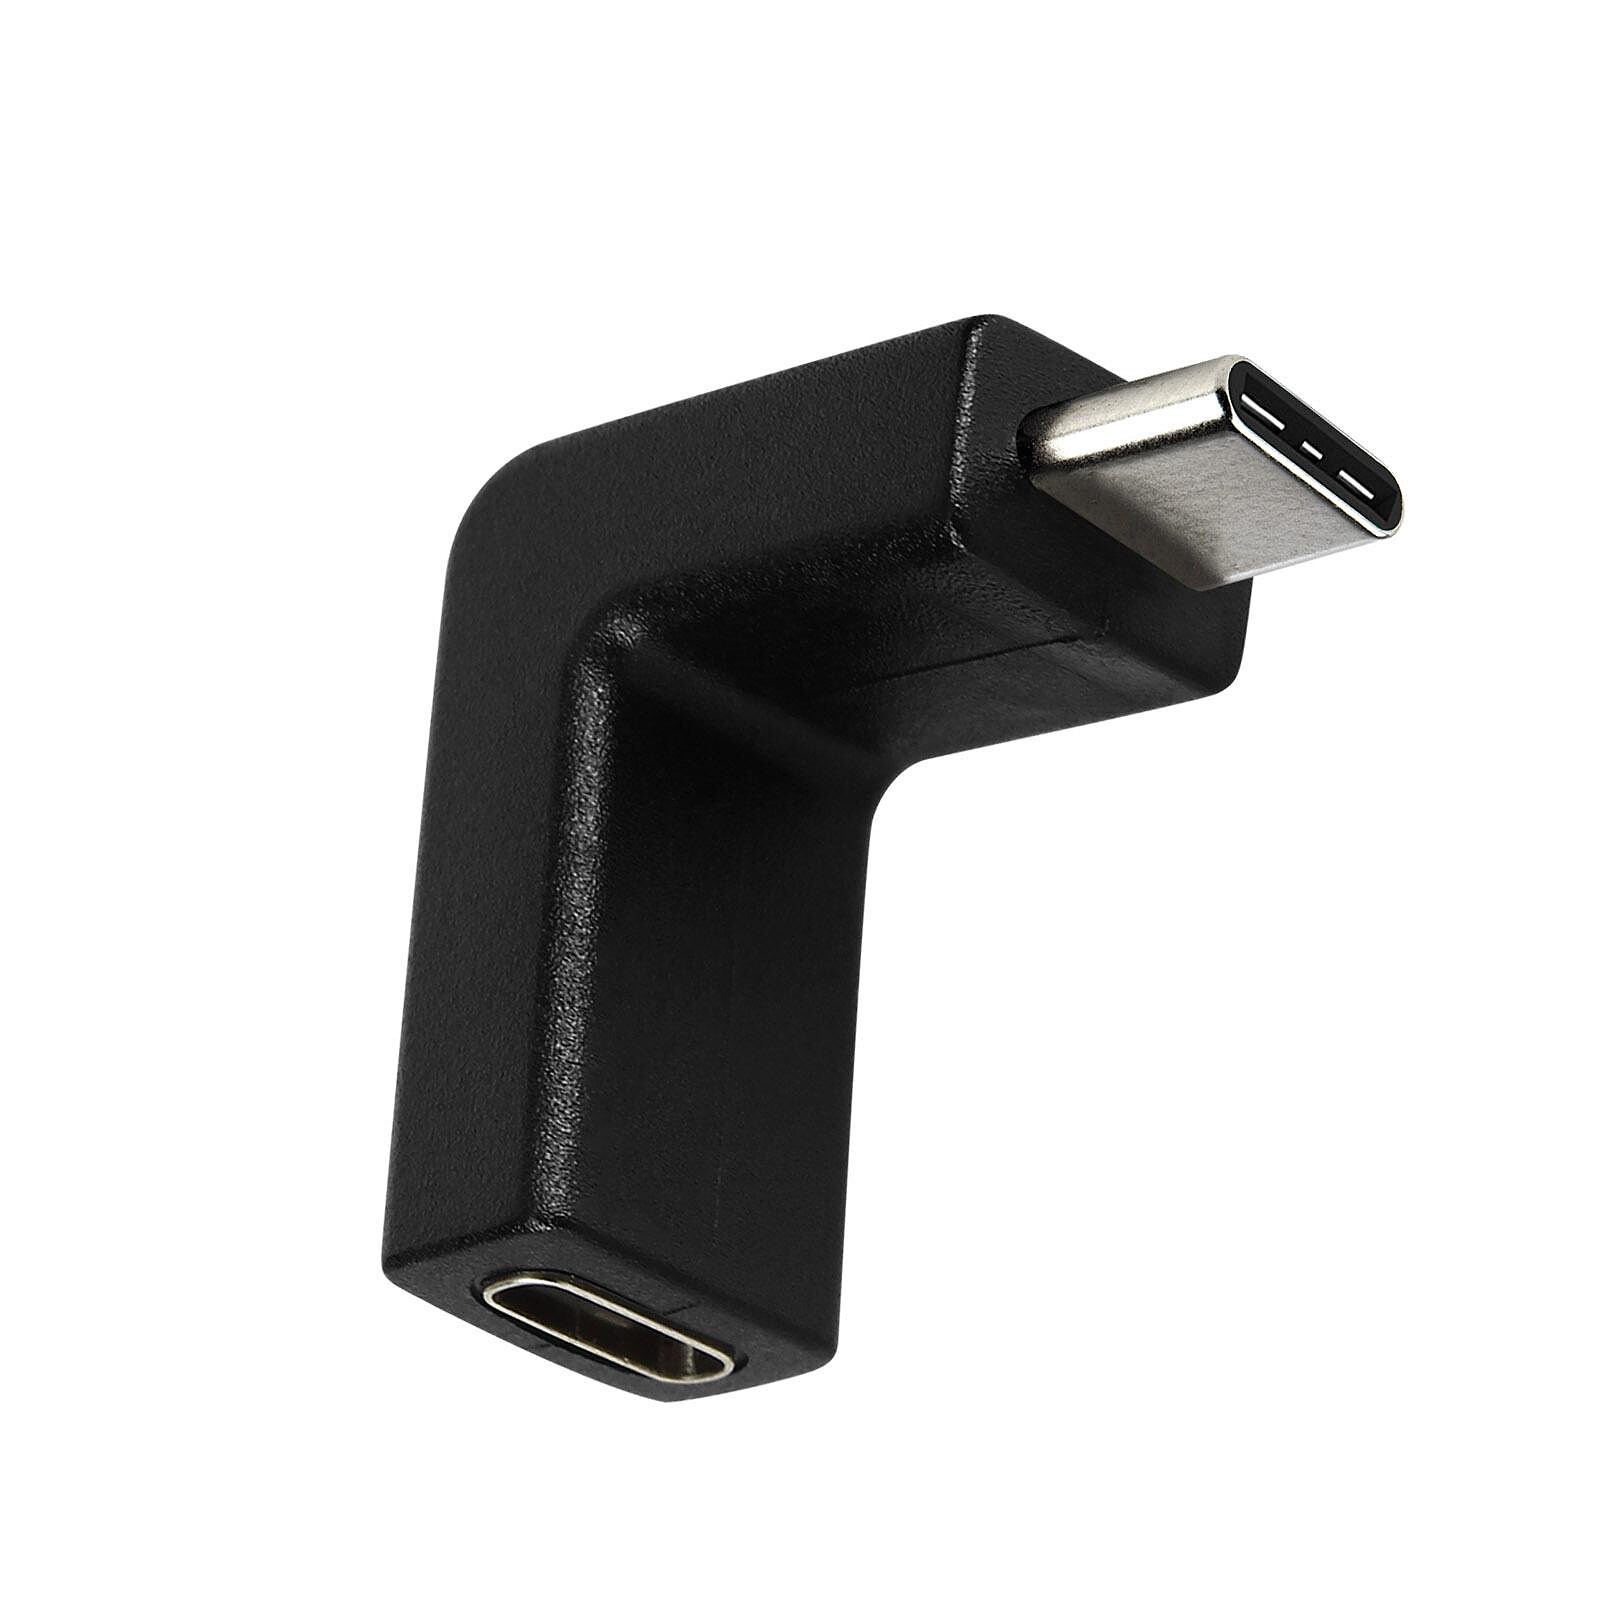 Adaptateur USB-C vers USB-A Scosche, vitesses de transfert de